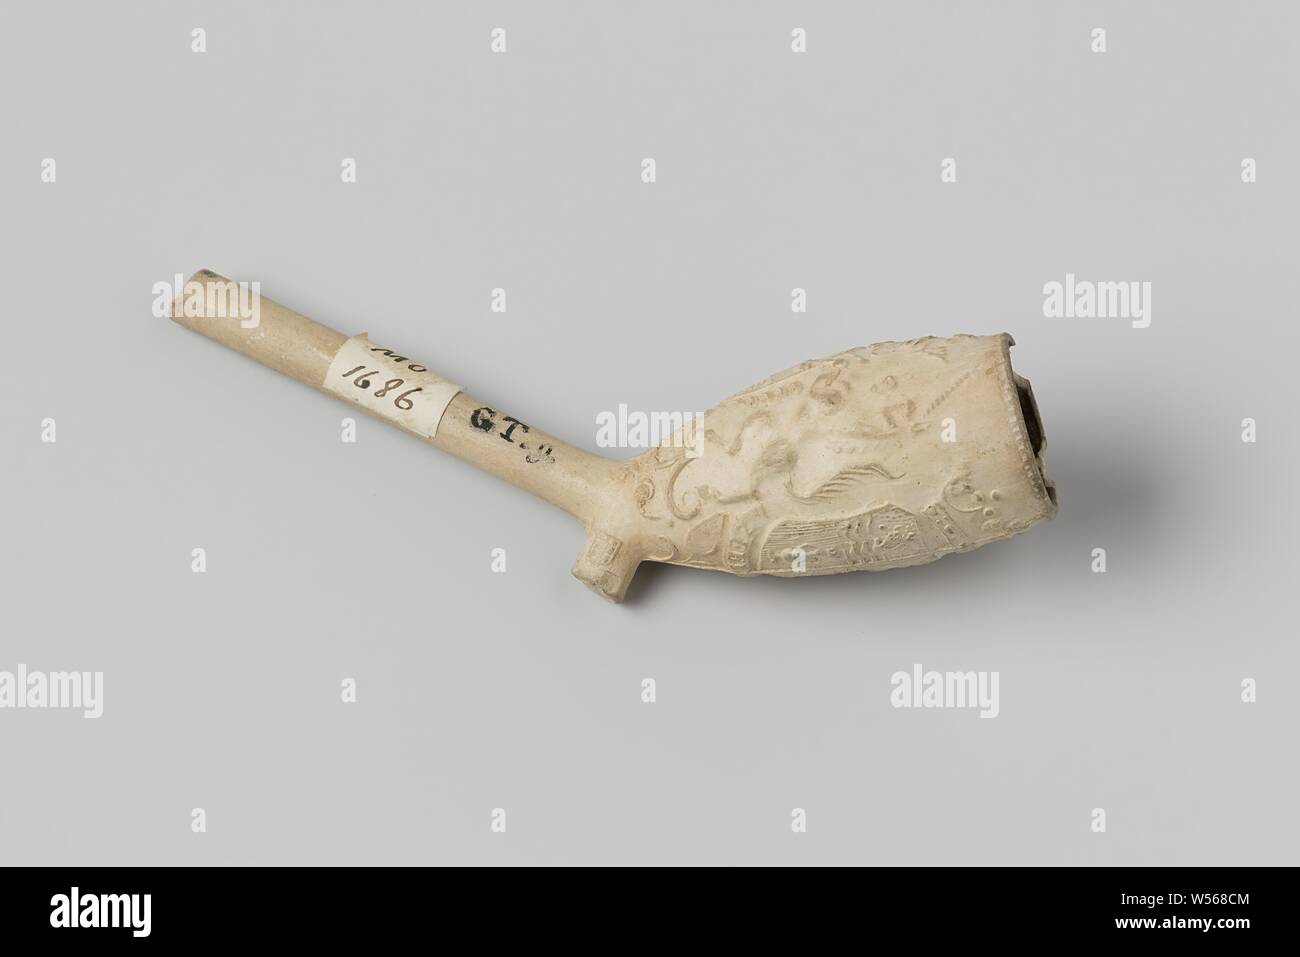 Pijpenkop, partie d'un tuyau de fumer avec les bras de Zélande., anonyme, c. 1400 - c. 1950, l'argile, du tuyau de 9,5 cm l 5,1 cm × w 2,5 cm Banque D'Images